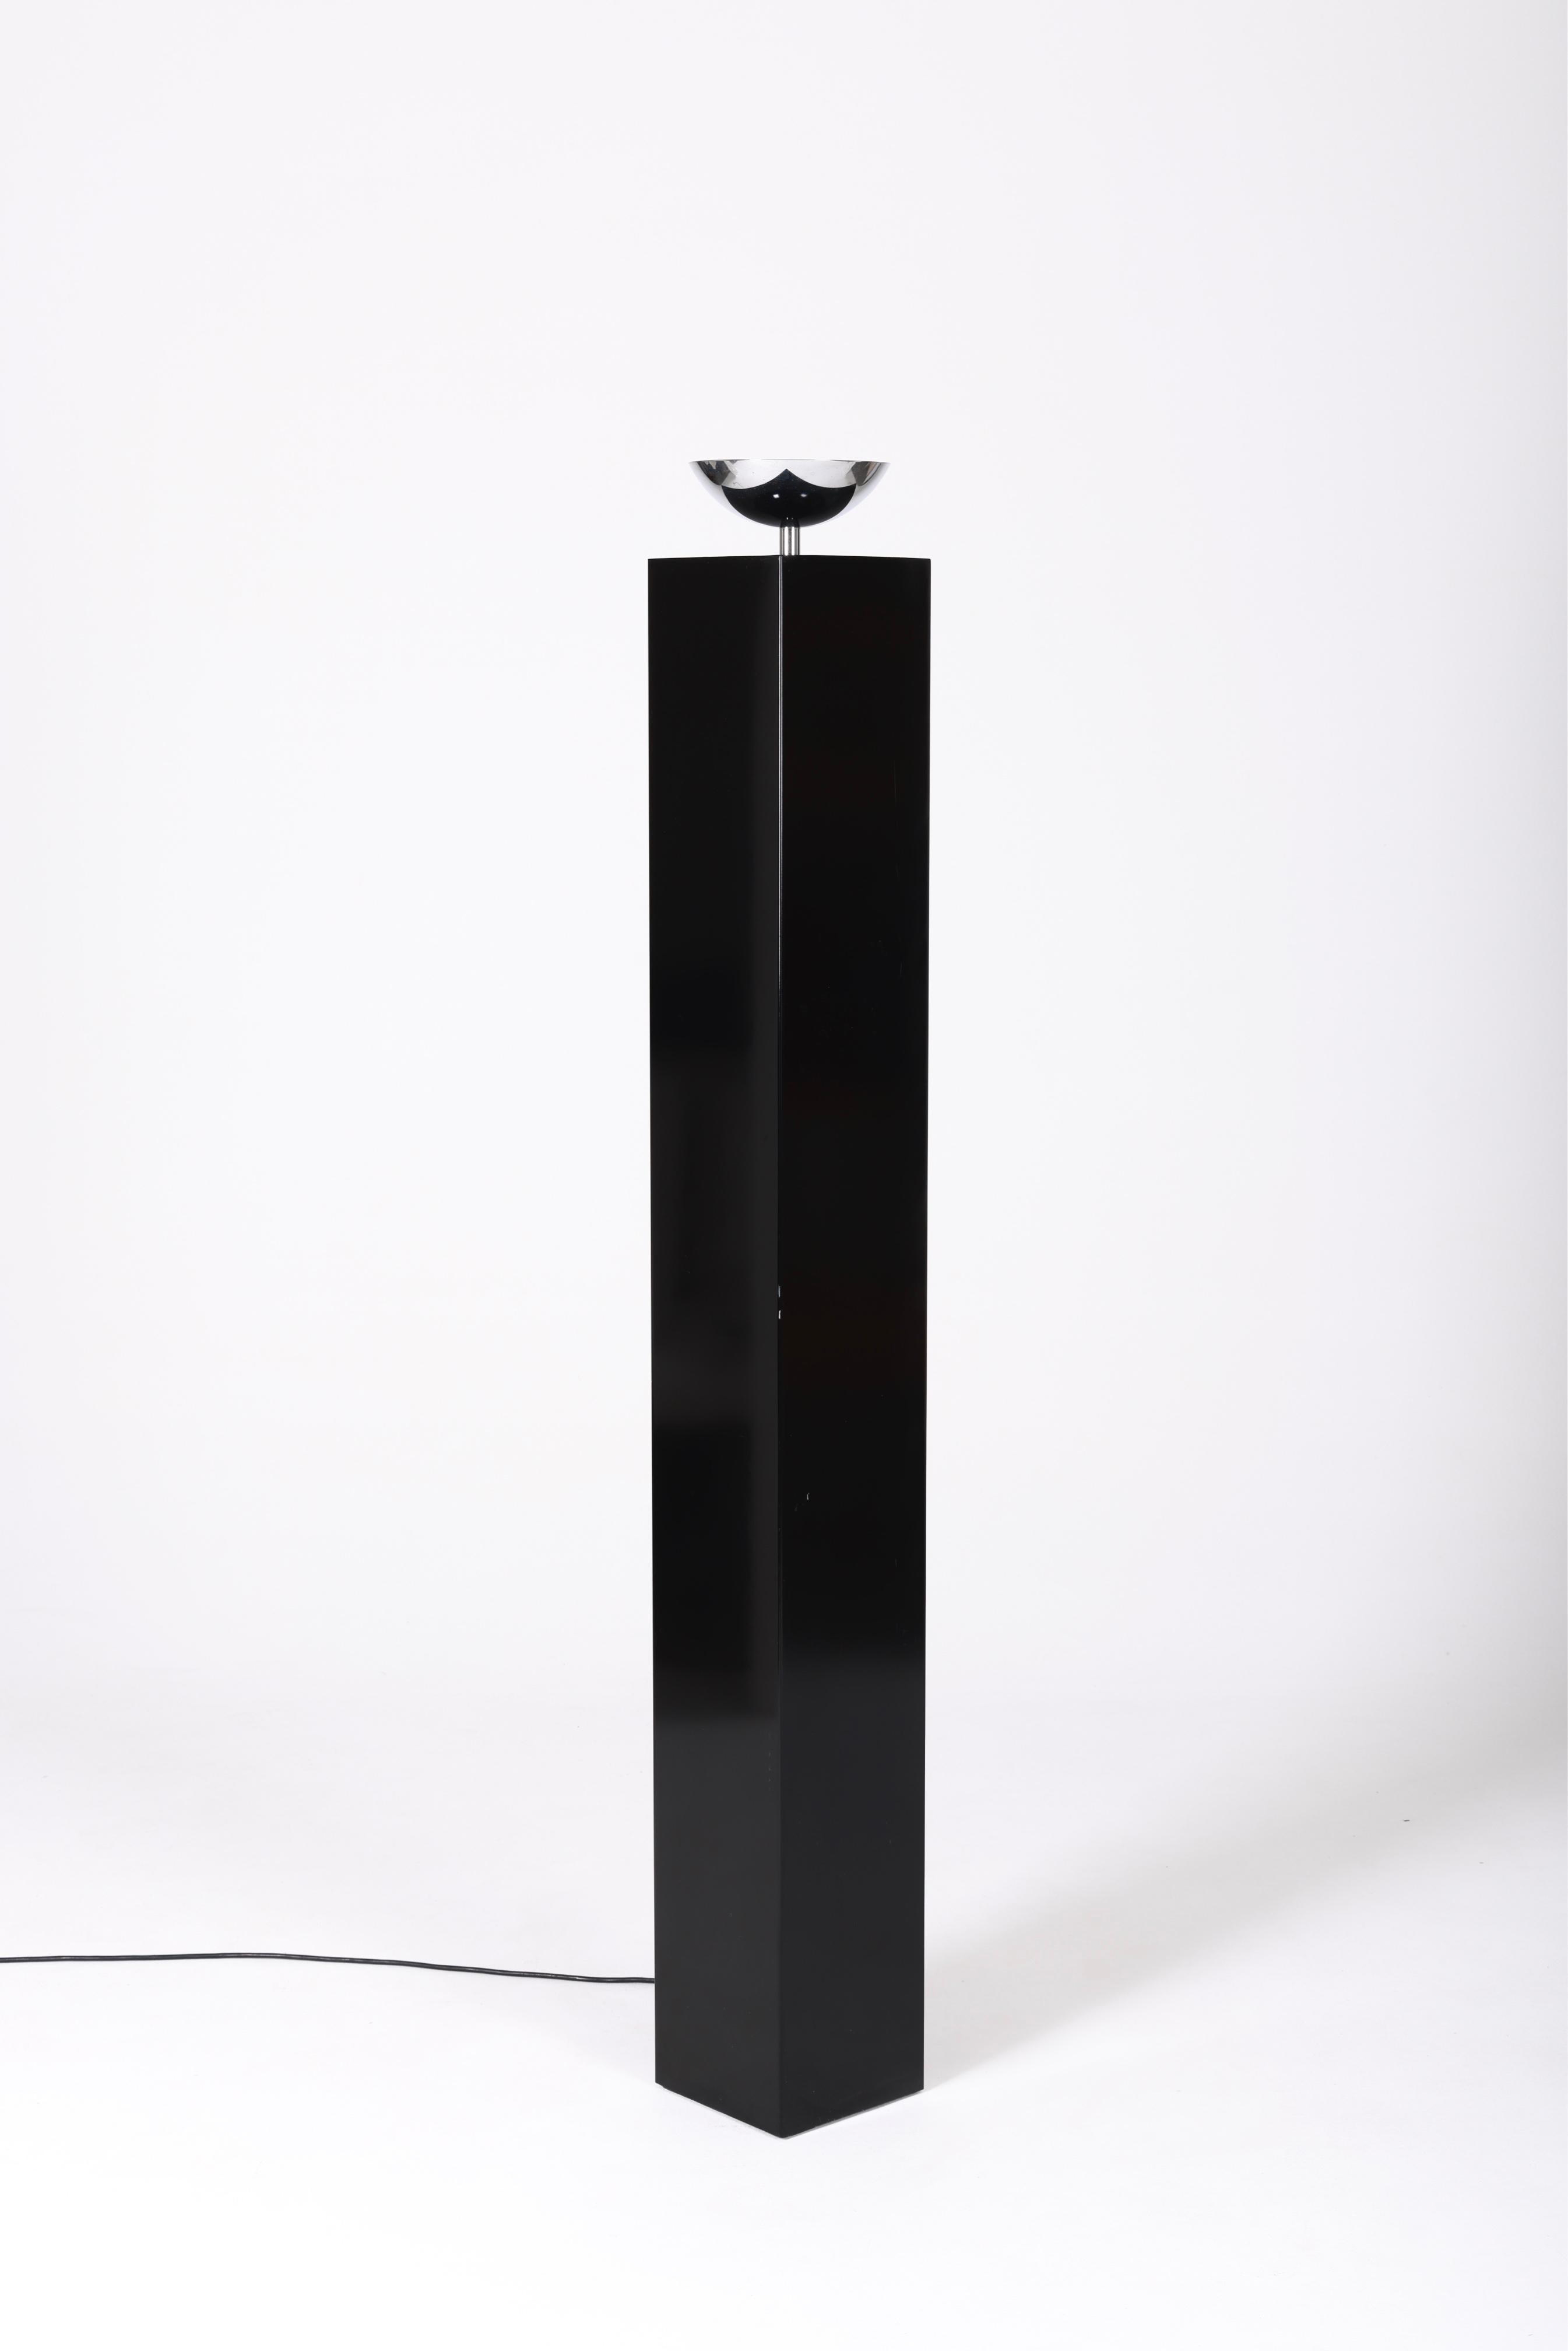 10582 lampadaire de Michel Boyer, édité par Verre Lumière, des années 1980, France. Structure en métal laqué noir brillant, réflecteur en métal chromé. Très bon état.
LP1110